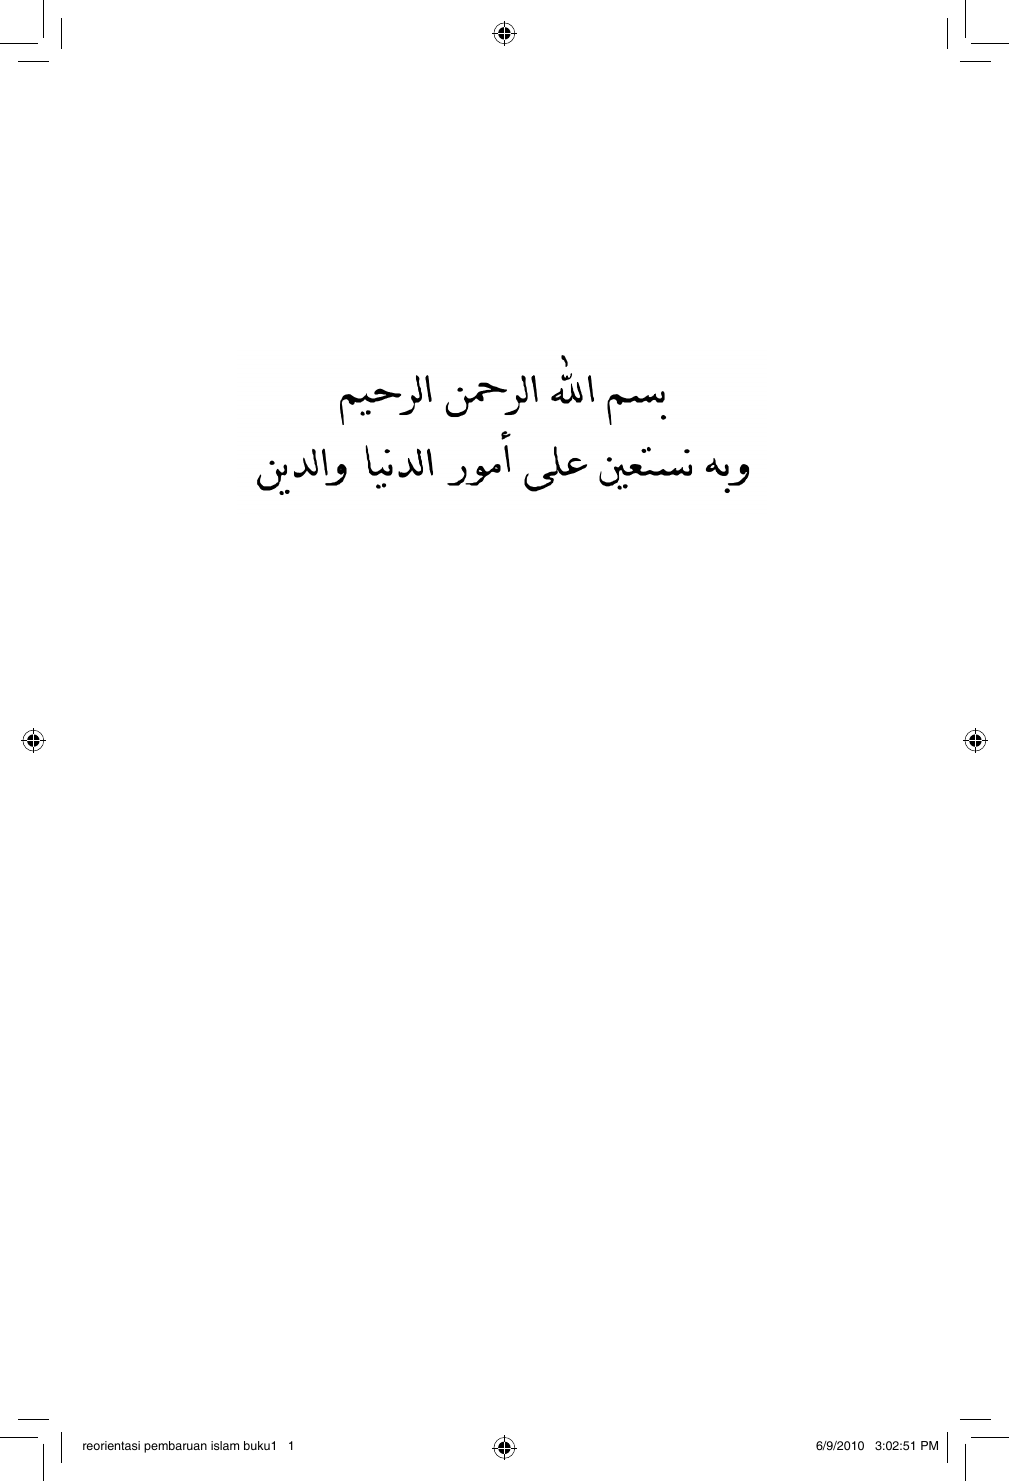 Reorientasi Pembaruan Islam Buku1 1 692010